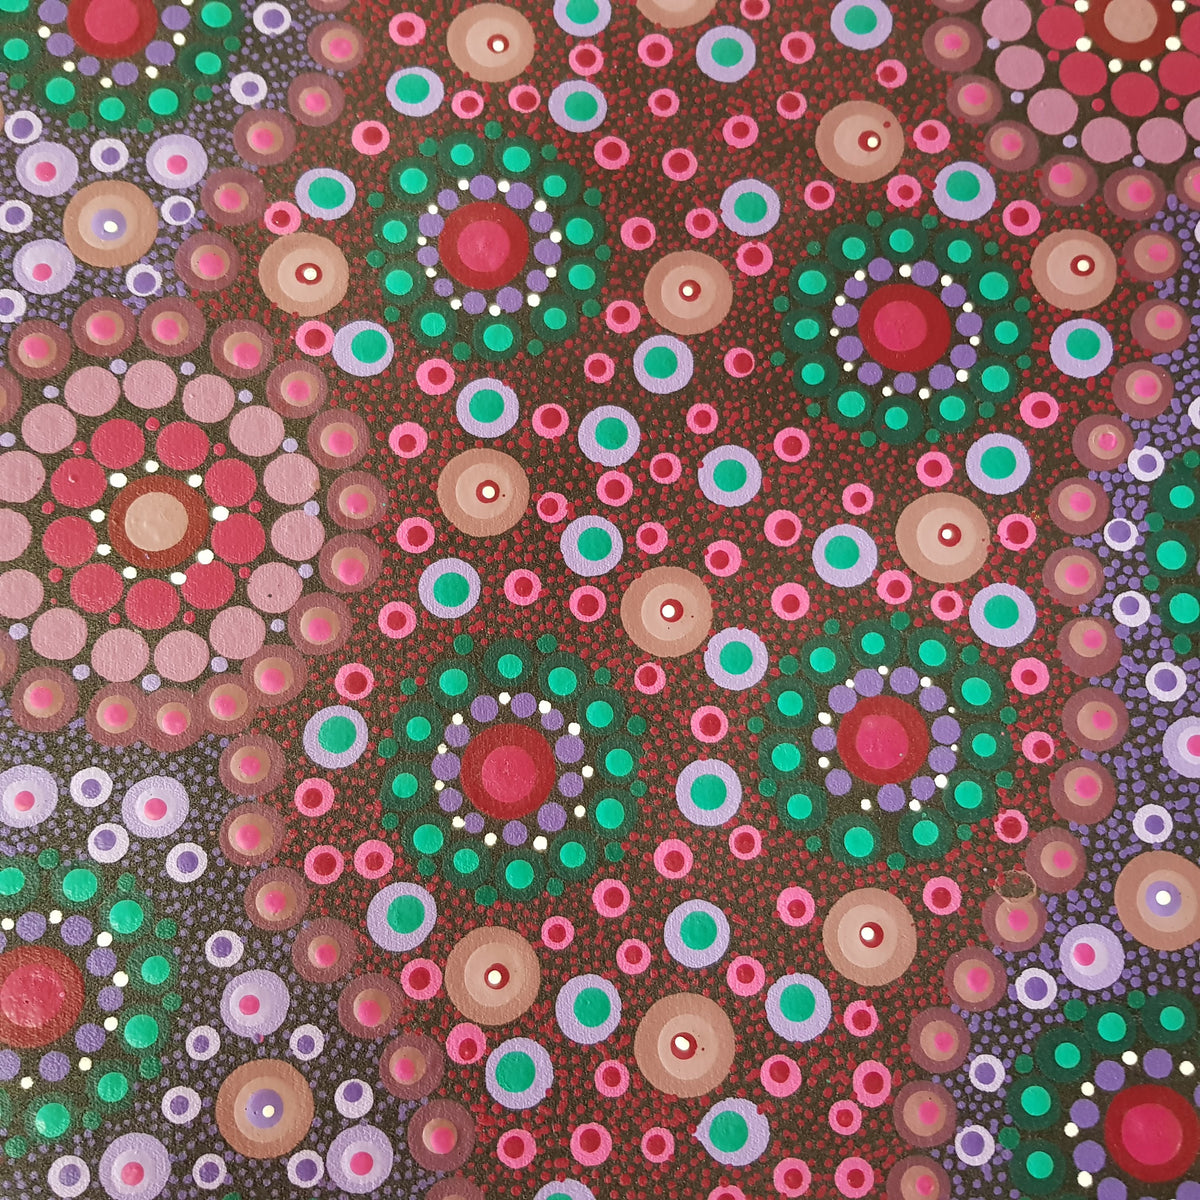 Symbolism of Aboriginal Art